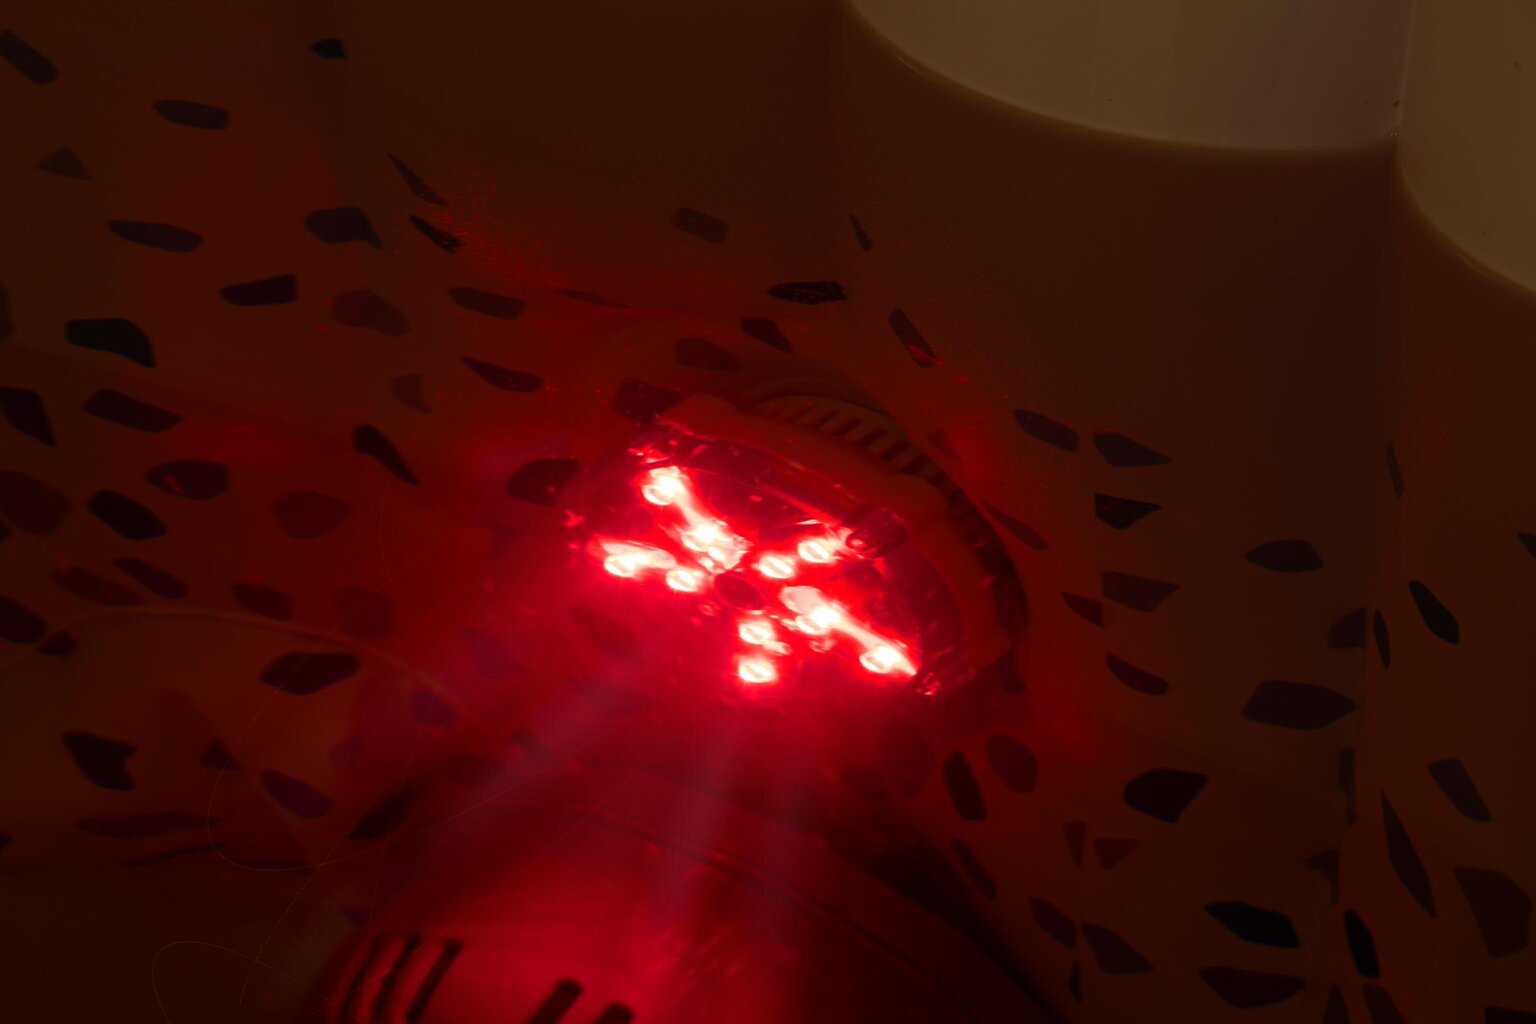 Šviestuvas masažiniams baseinui Bestway Lay-Z-Spa LED, 7 spalvų kaina ir informacija | Baseinų priedai | pigu.lt